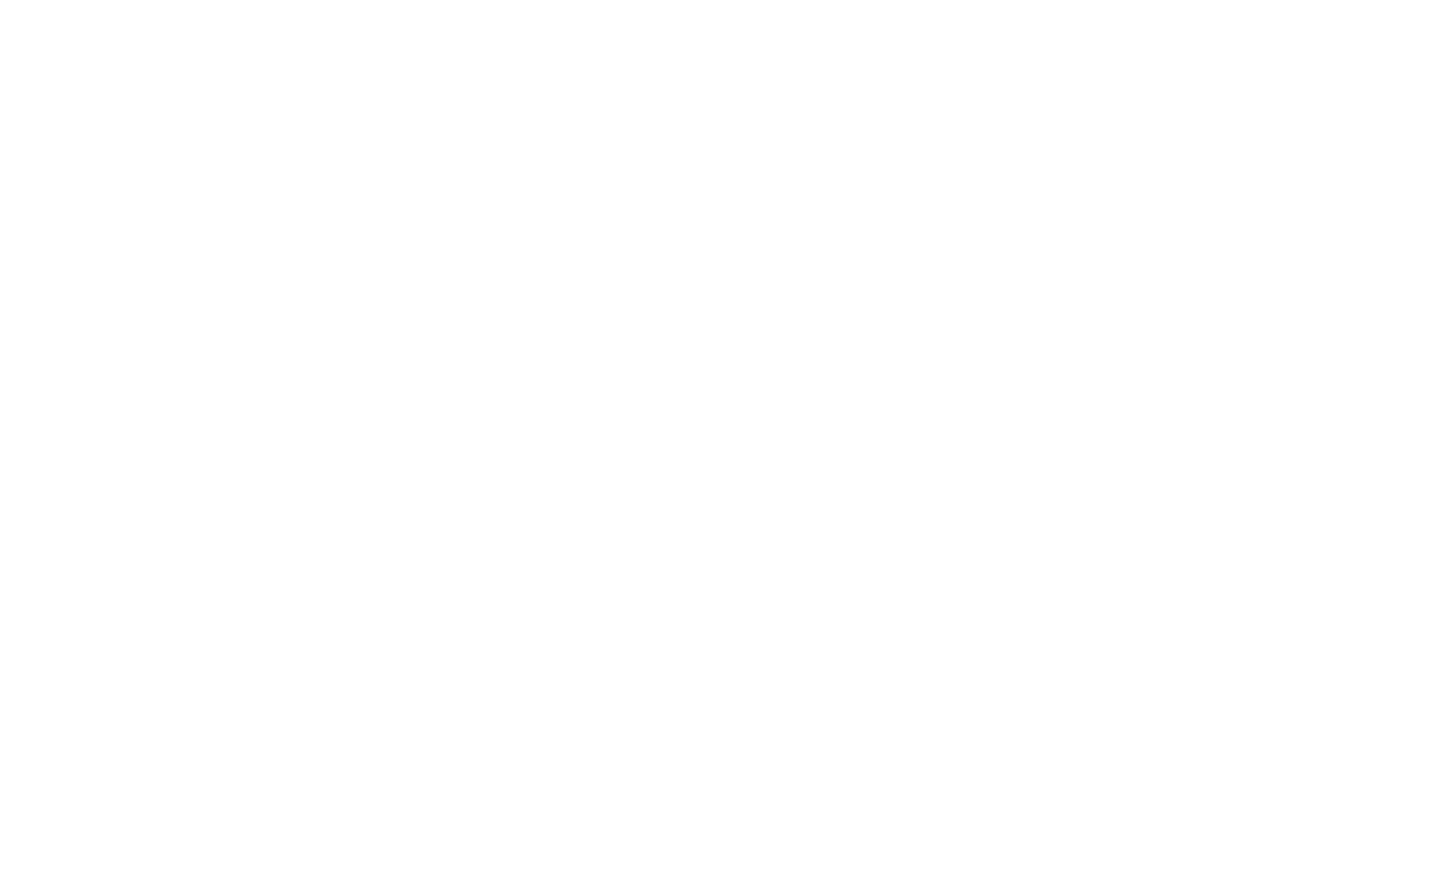 The Vela logo